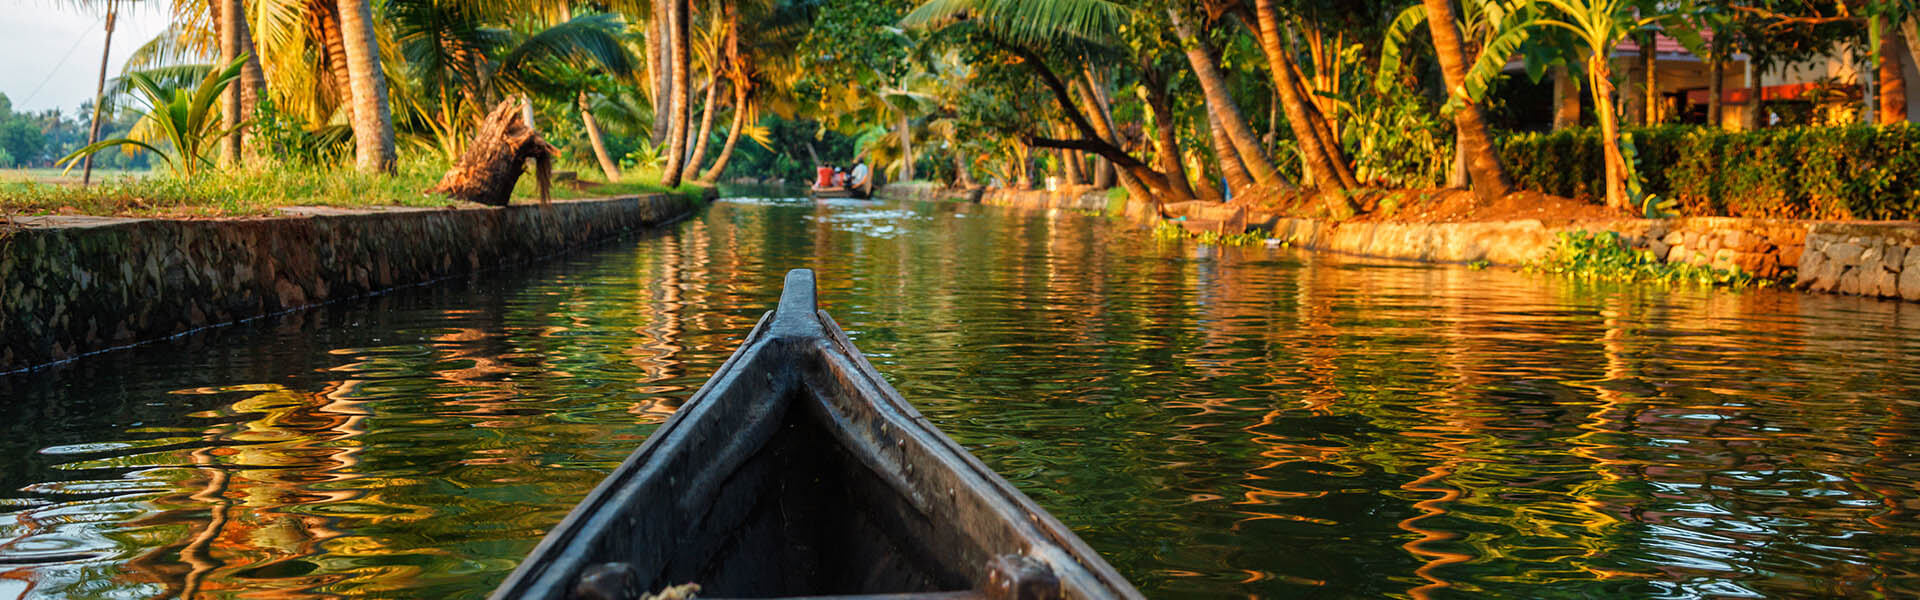 Backwaters of Kerala, kerala backwaters, kerala tour, india tour